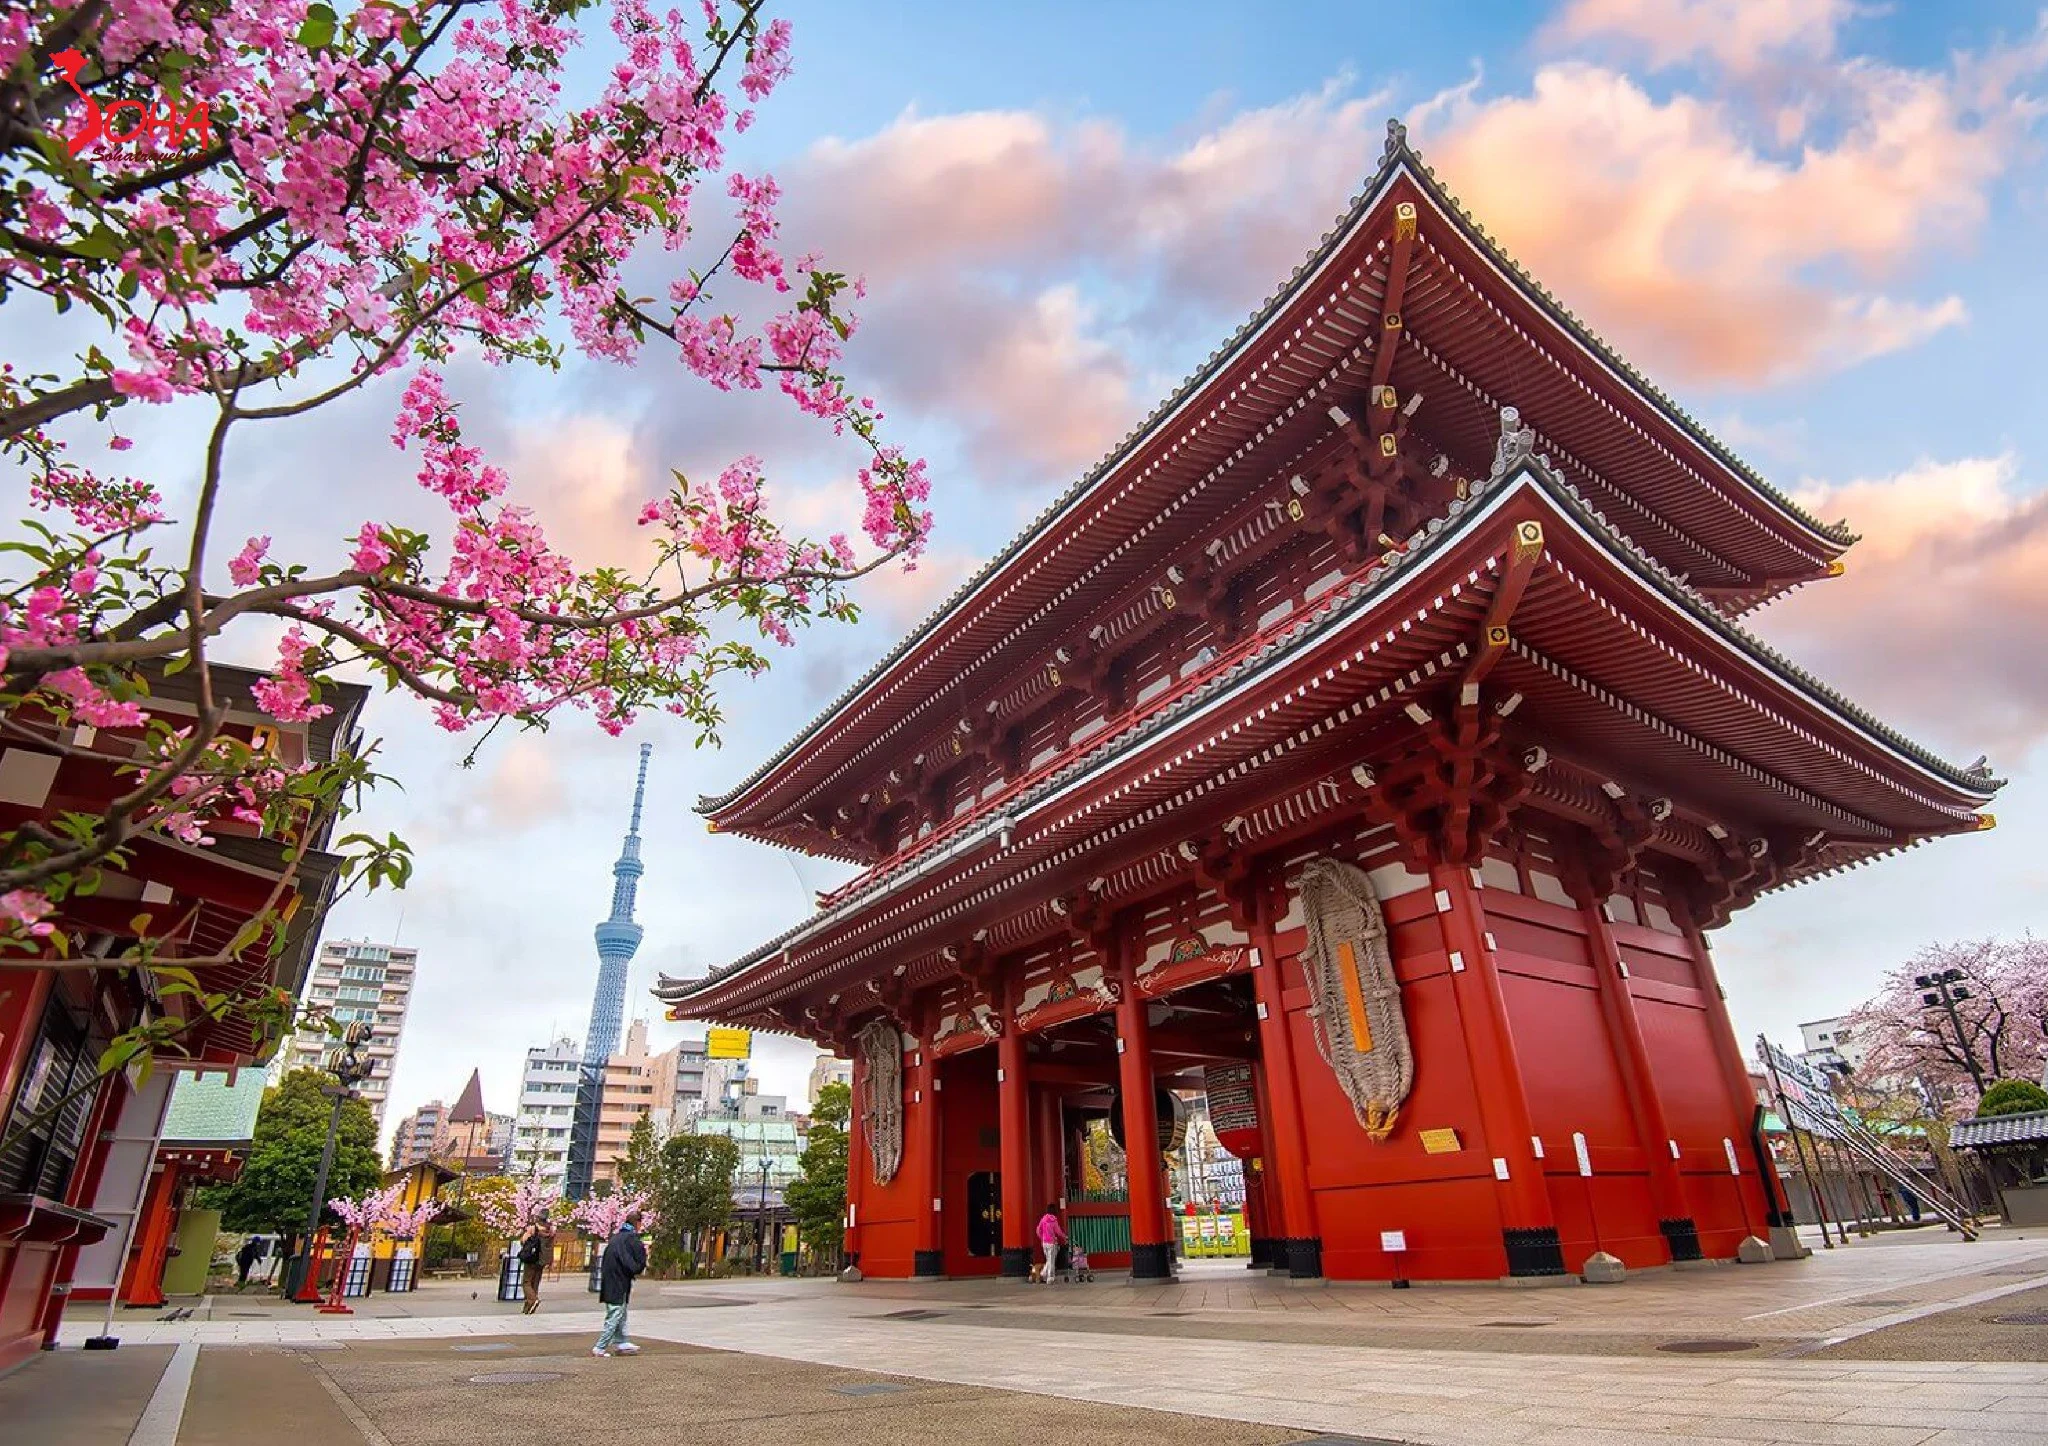 CUNG ĐƯỜNG VÀNG NHẬT BẢN 6N5Đ: OSAKA – KYOTO – NAGOYA – PHÚ SĨ – TOKYO